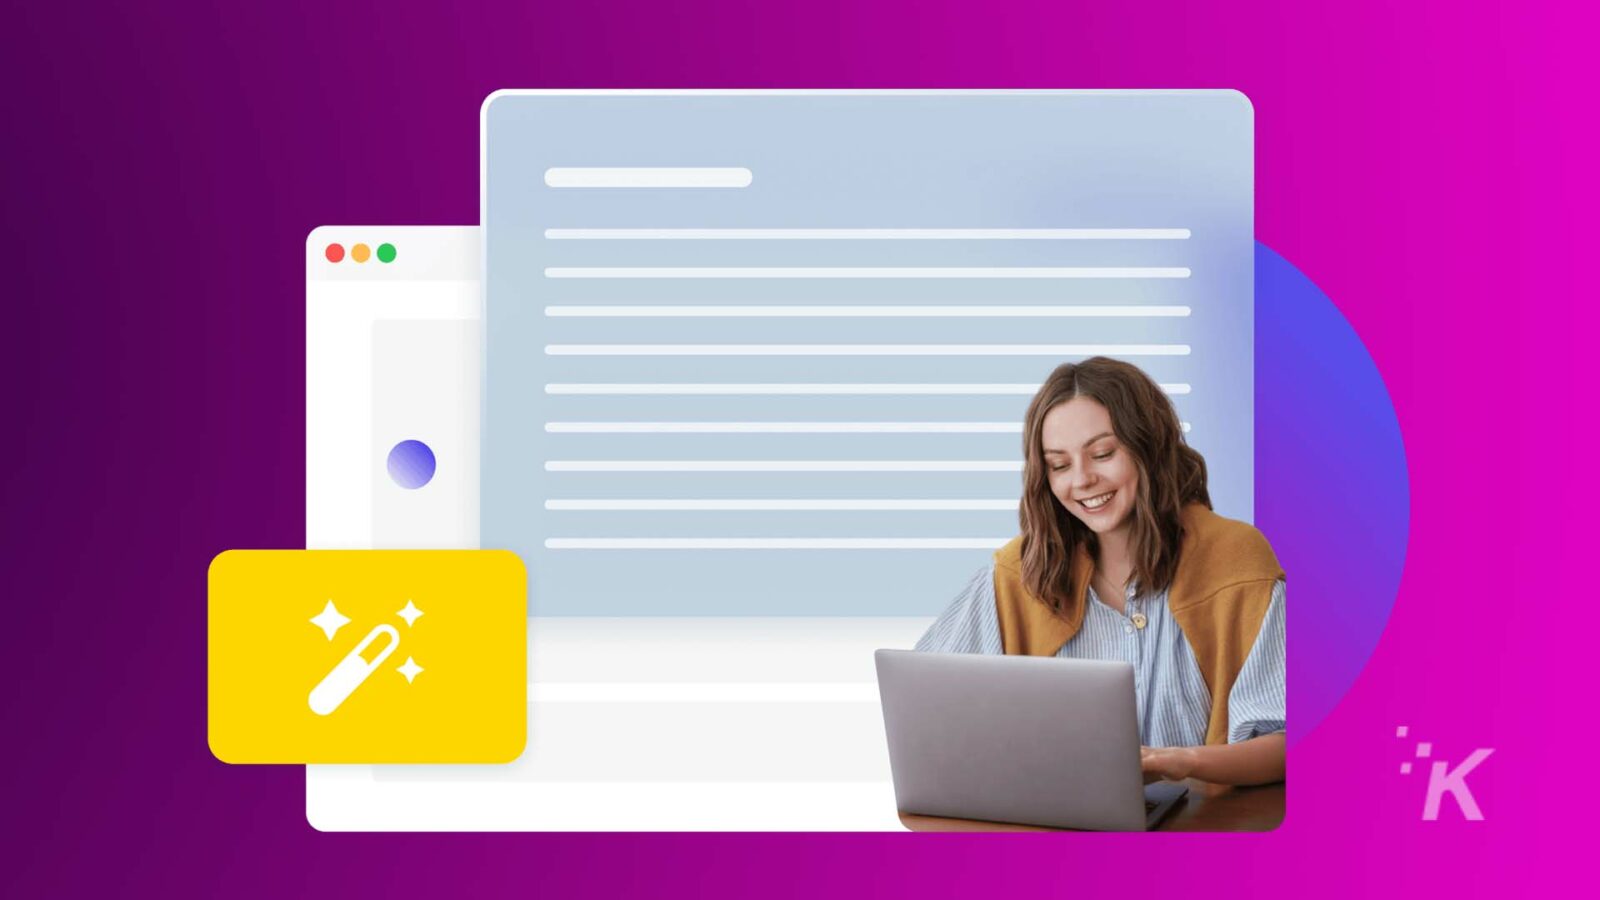 鮮やかな紫と青の背景が特徴的な、Web 開発ツールを暗示するグラフィック オーバーレイを備えたラップトップに向かって笑っている人。